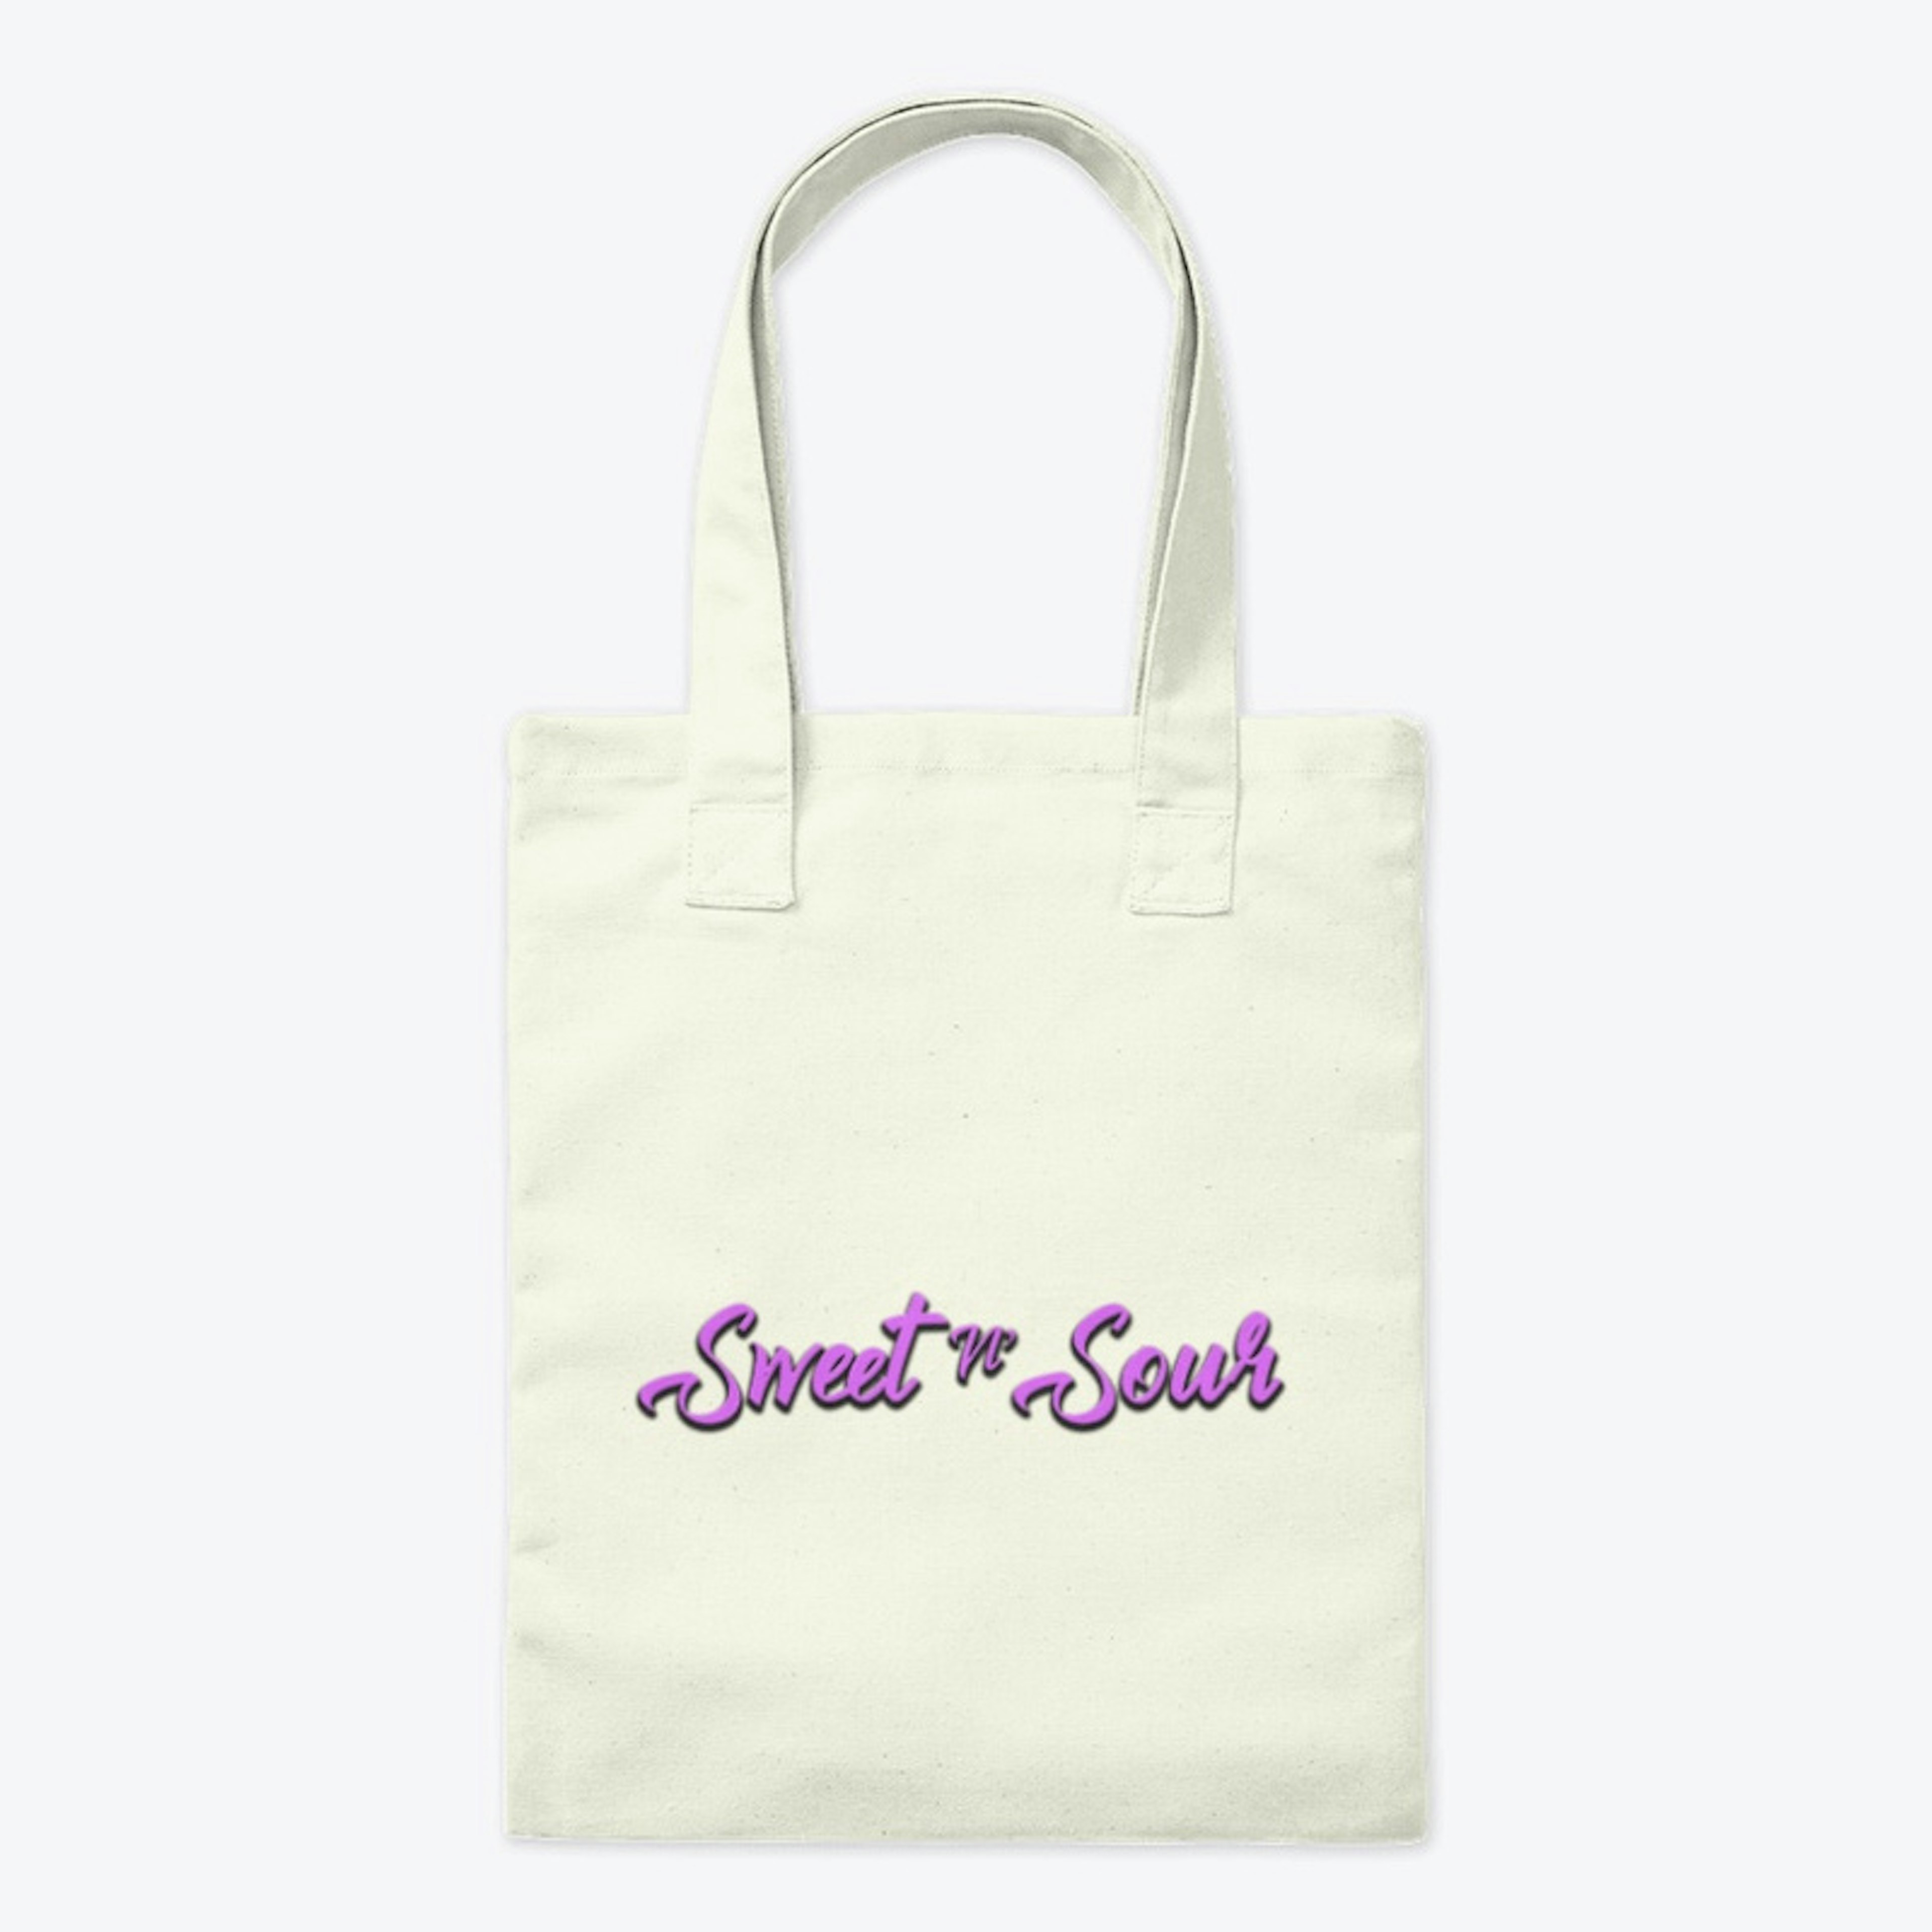 Sweet N' Sour Tote Bag